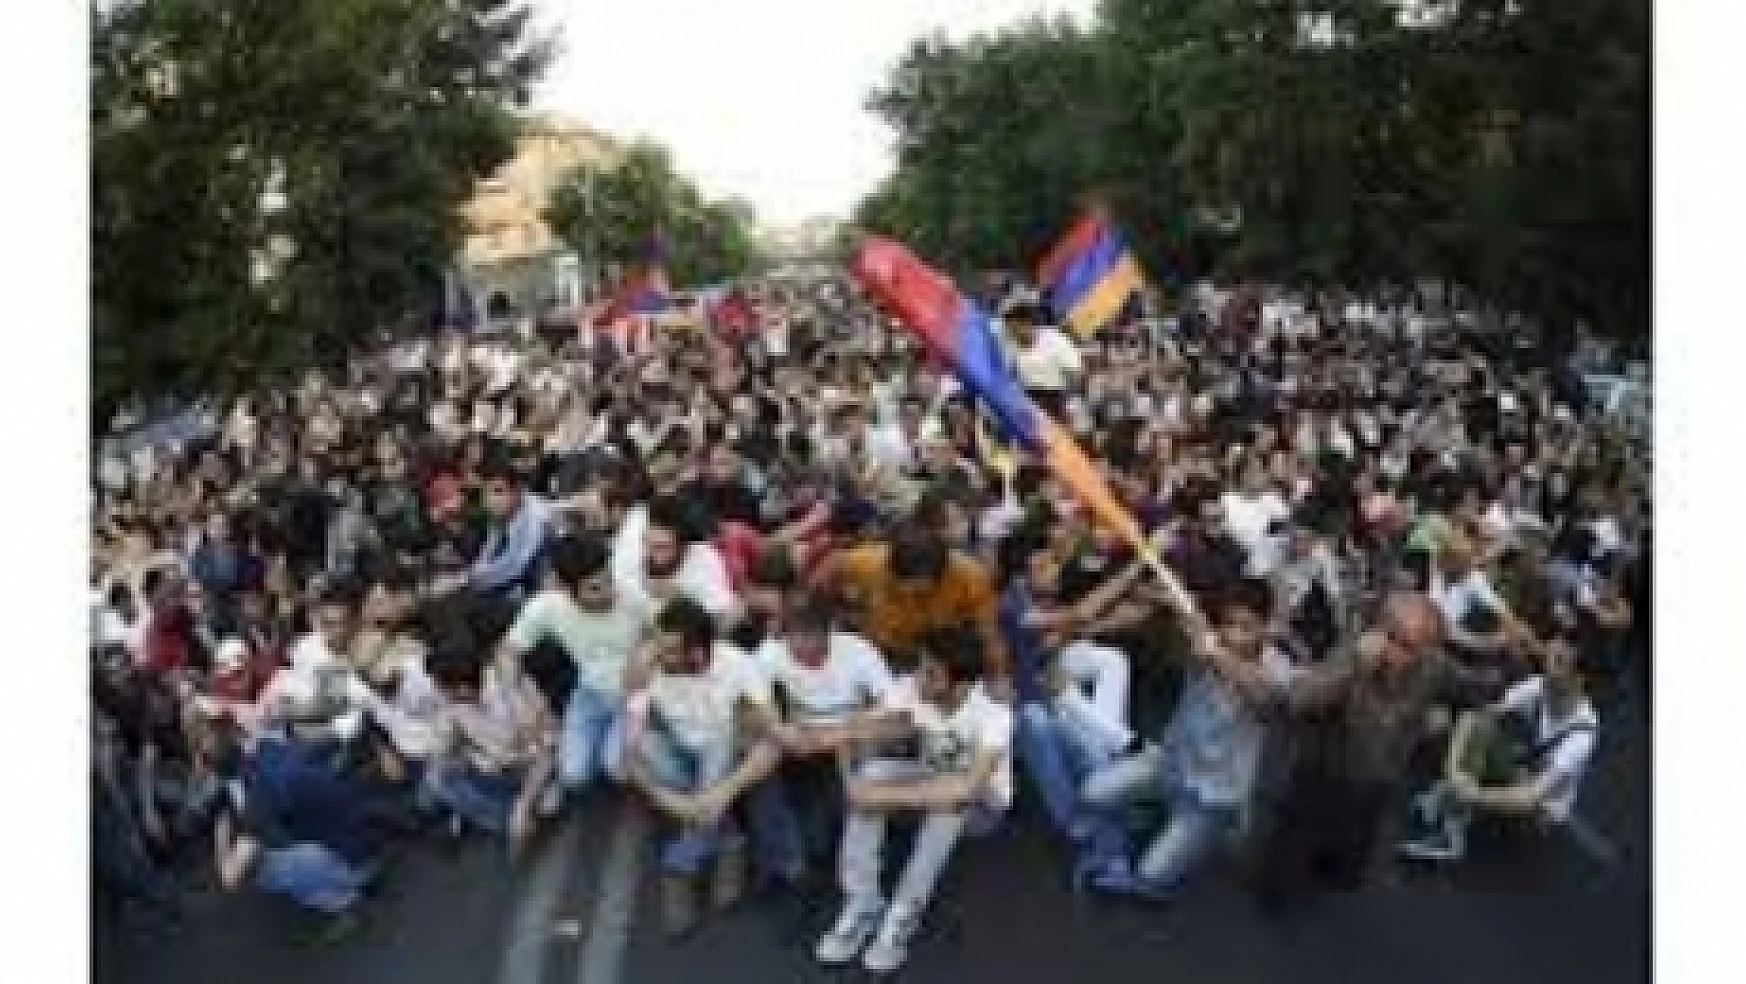 Ermenistan'da halk, sarayın kapısına dayandı